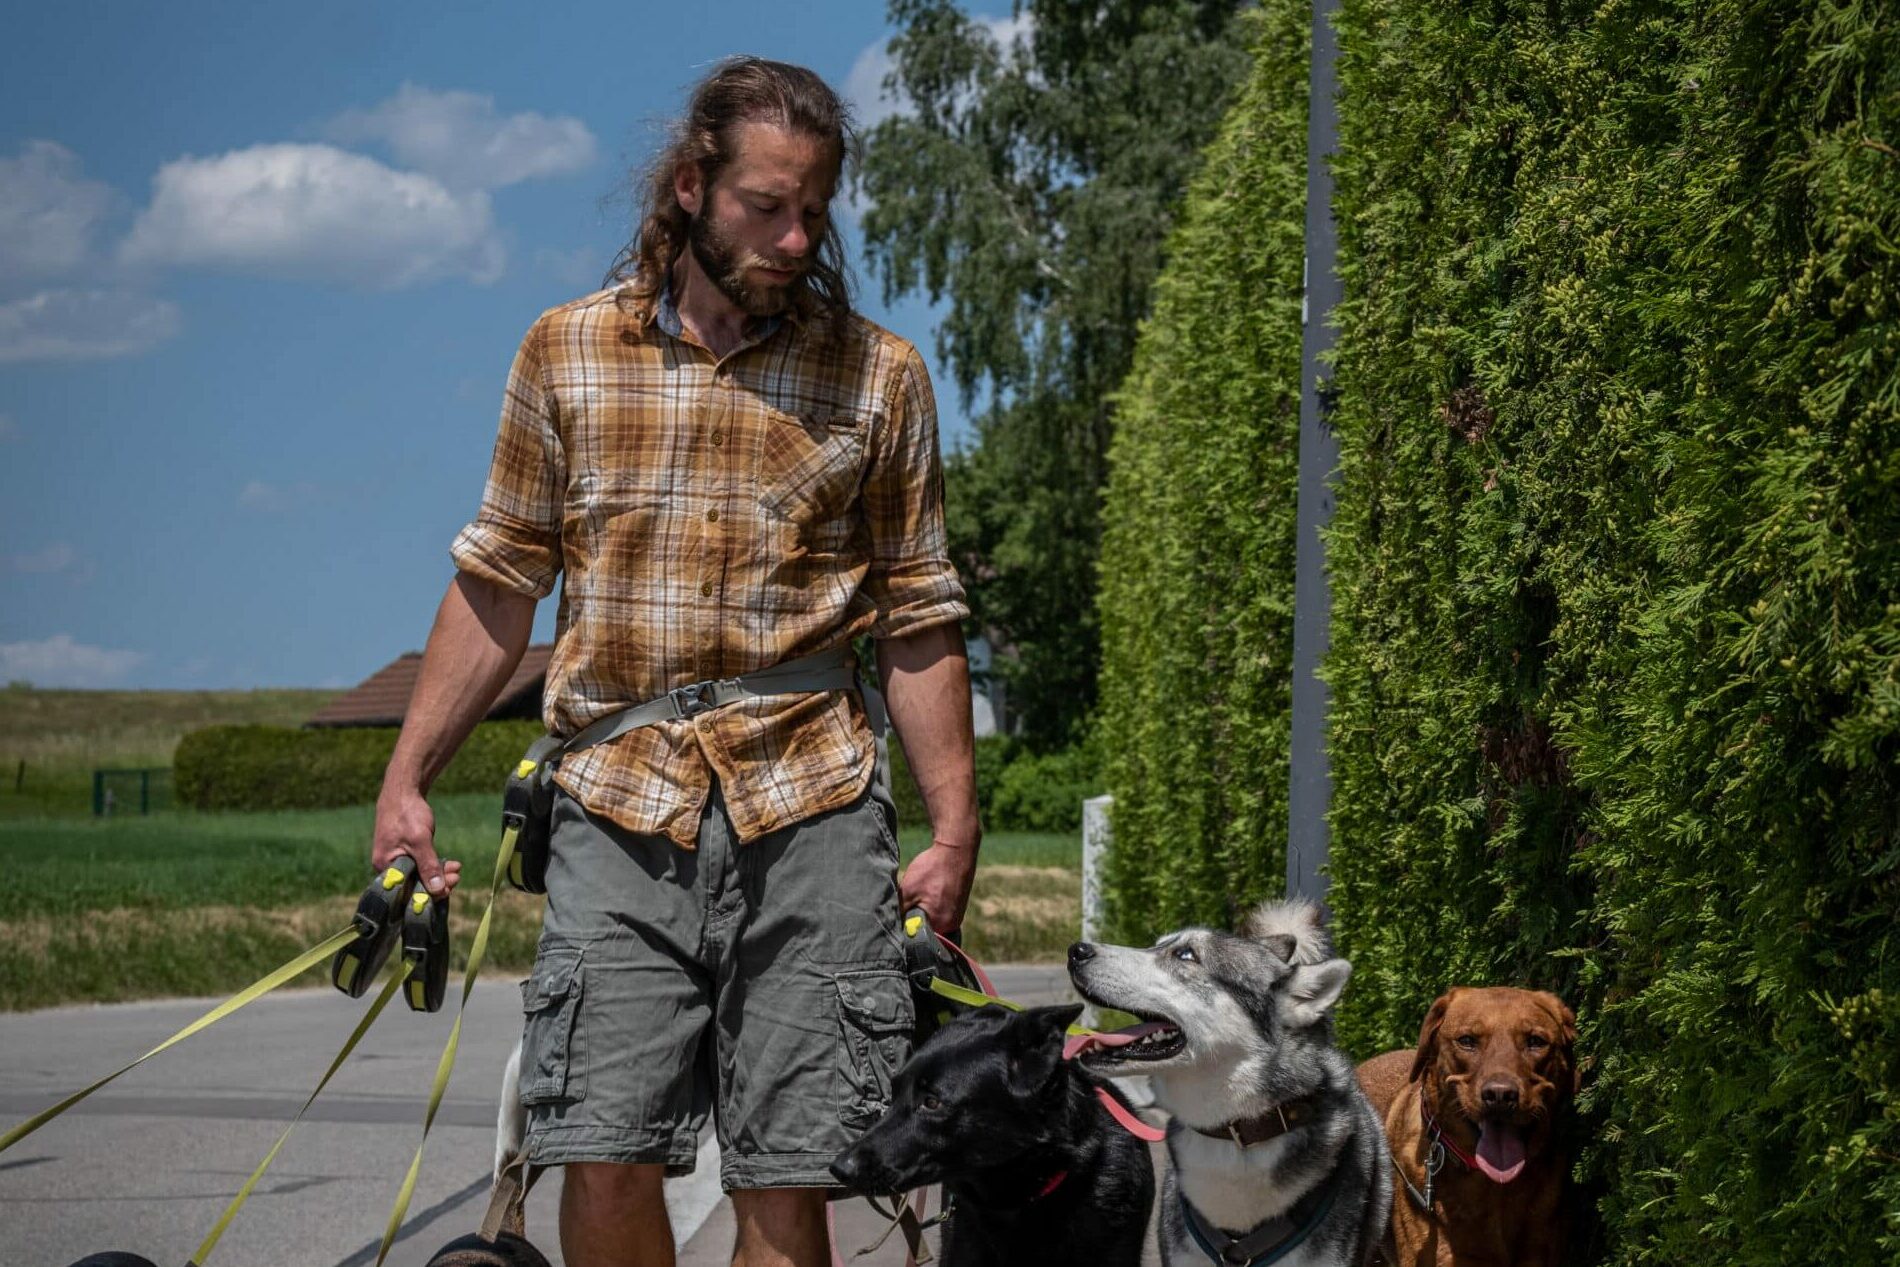 Simon geht mit den Pensionshunden auf einem Feldweg spazieren